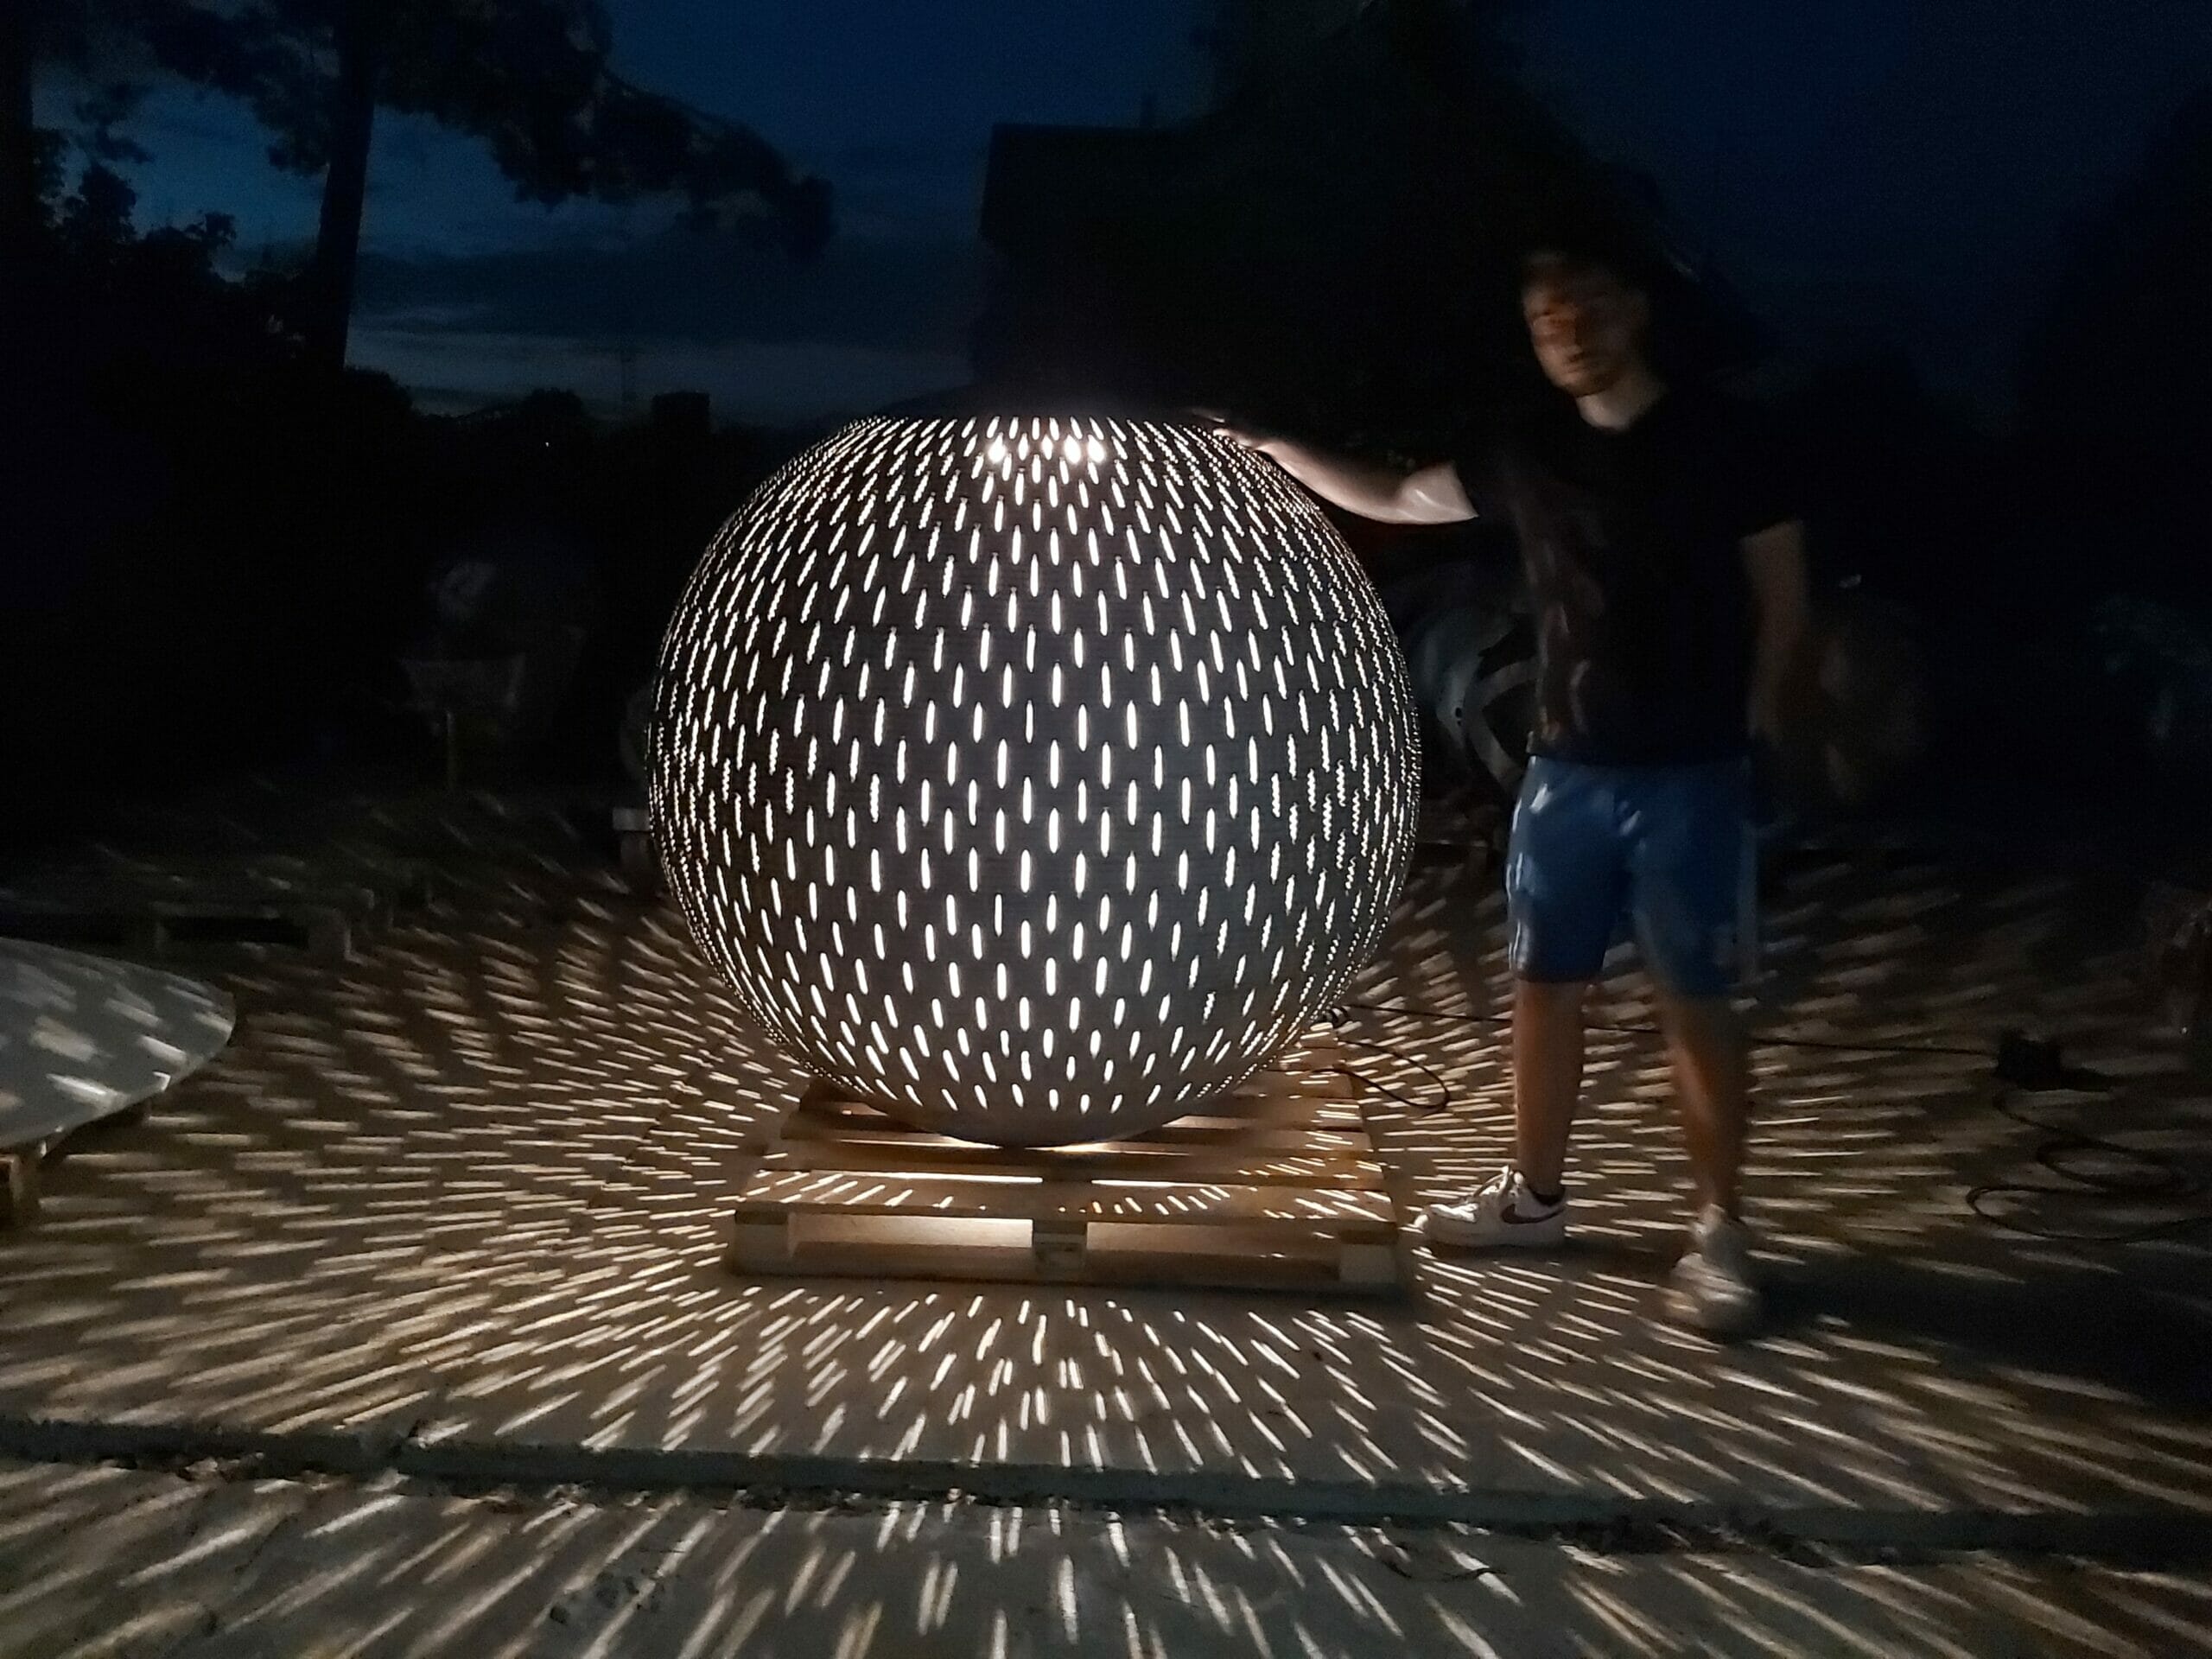 Magic Sphere at night with yellow light - Svaja